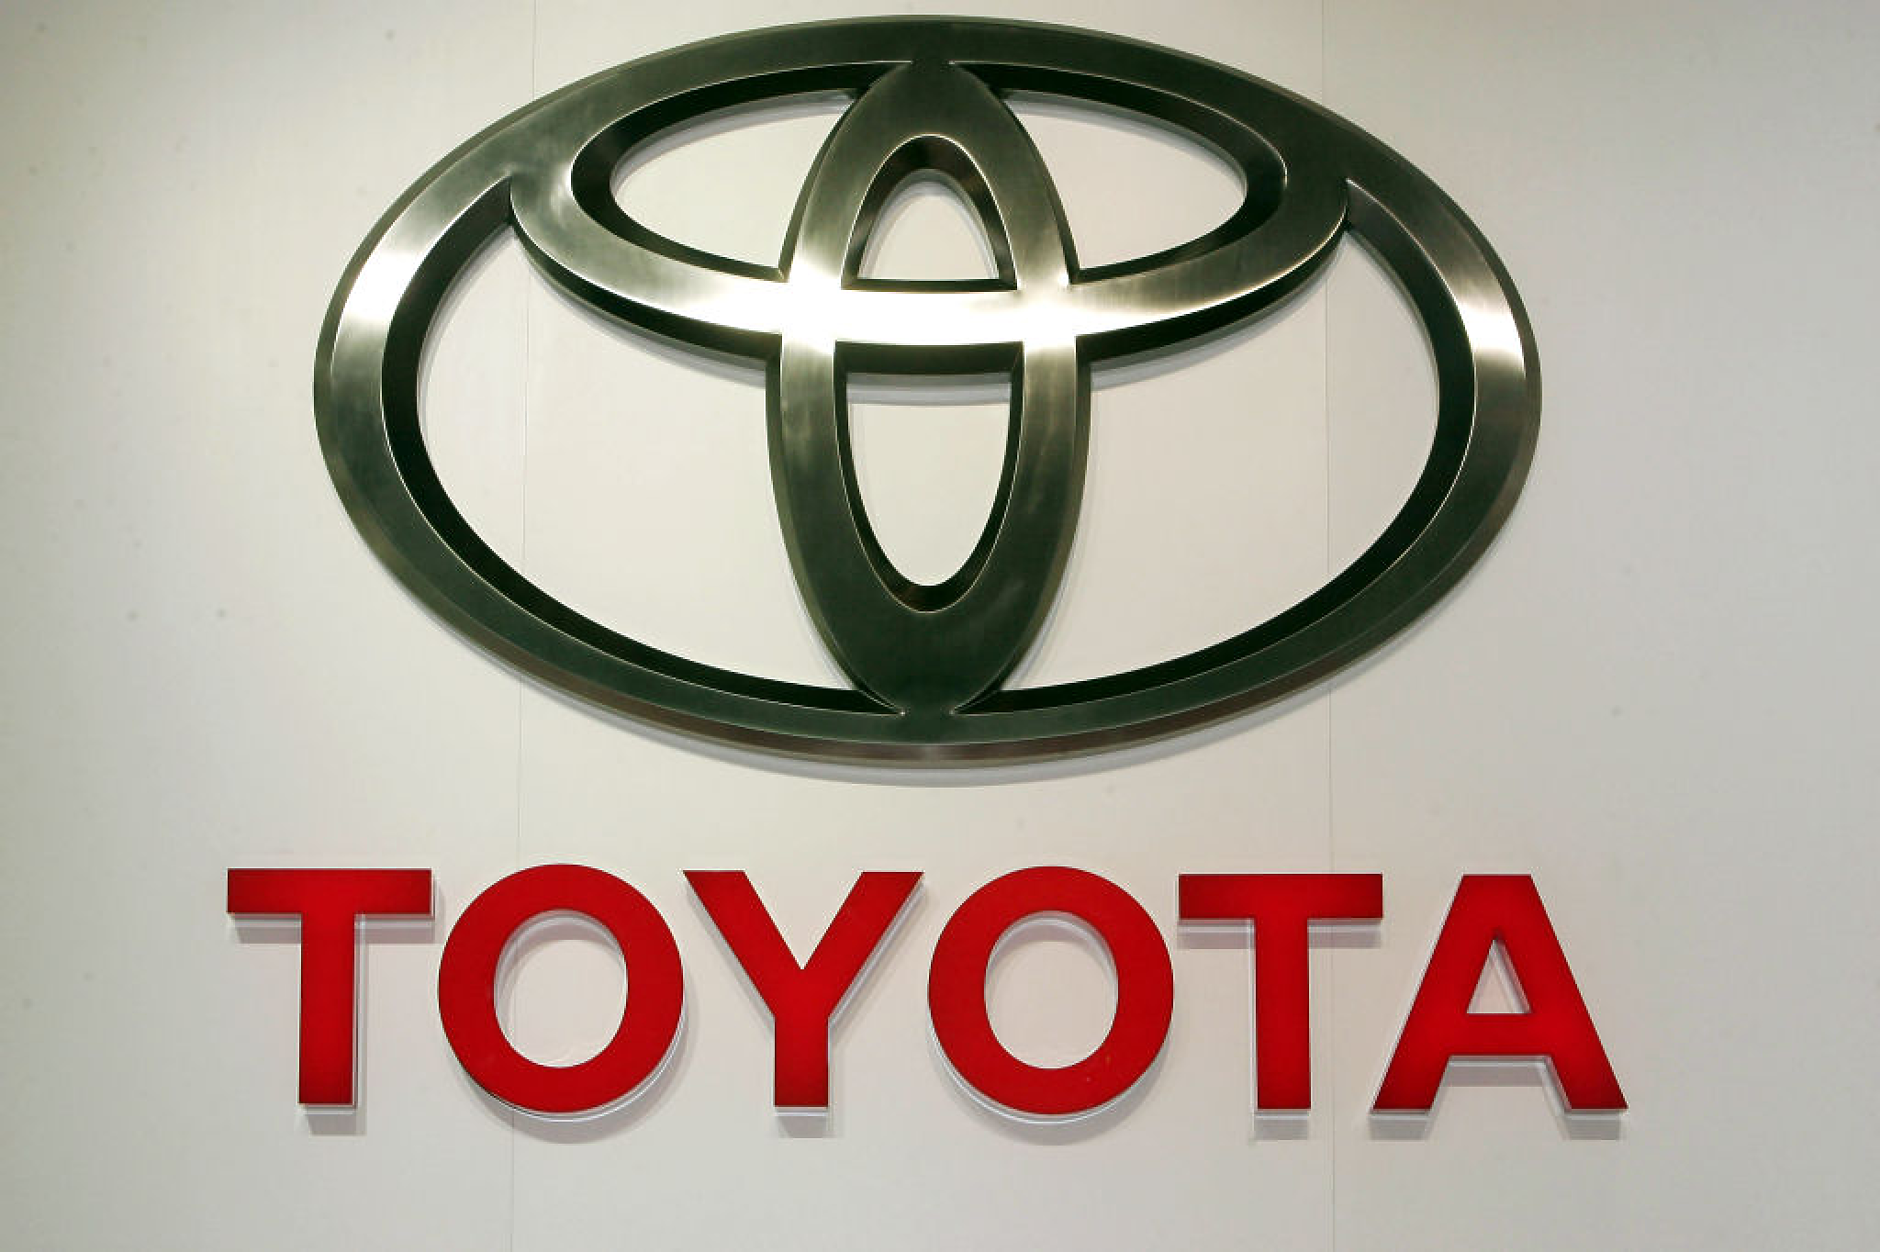 Toyota си заложи амбициозна цел - петкратен скок в продажбите на електрически превозни средства